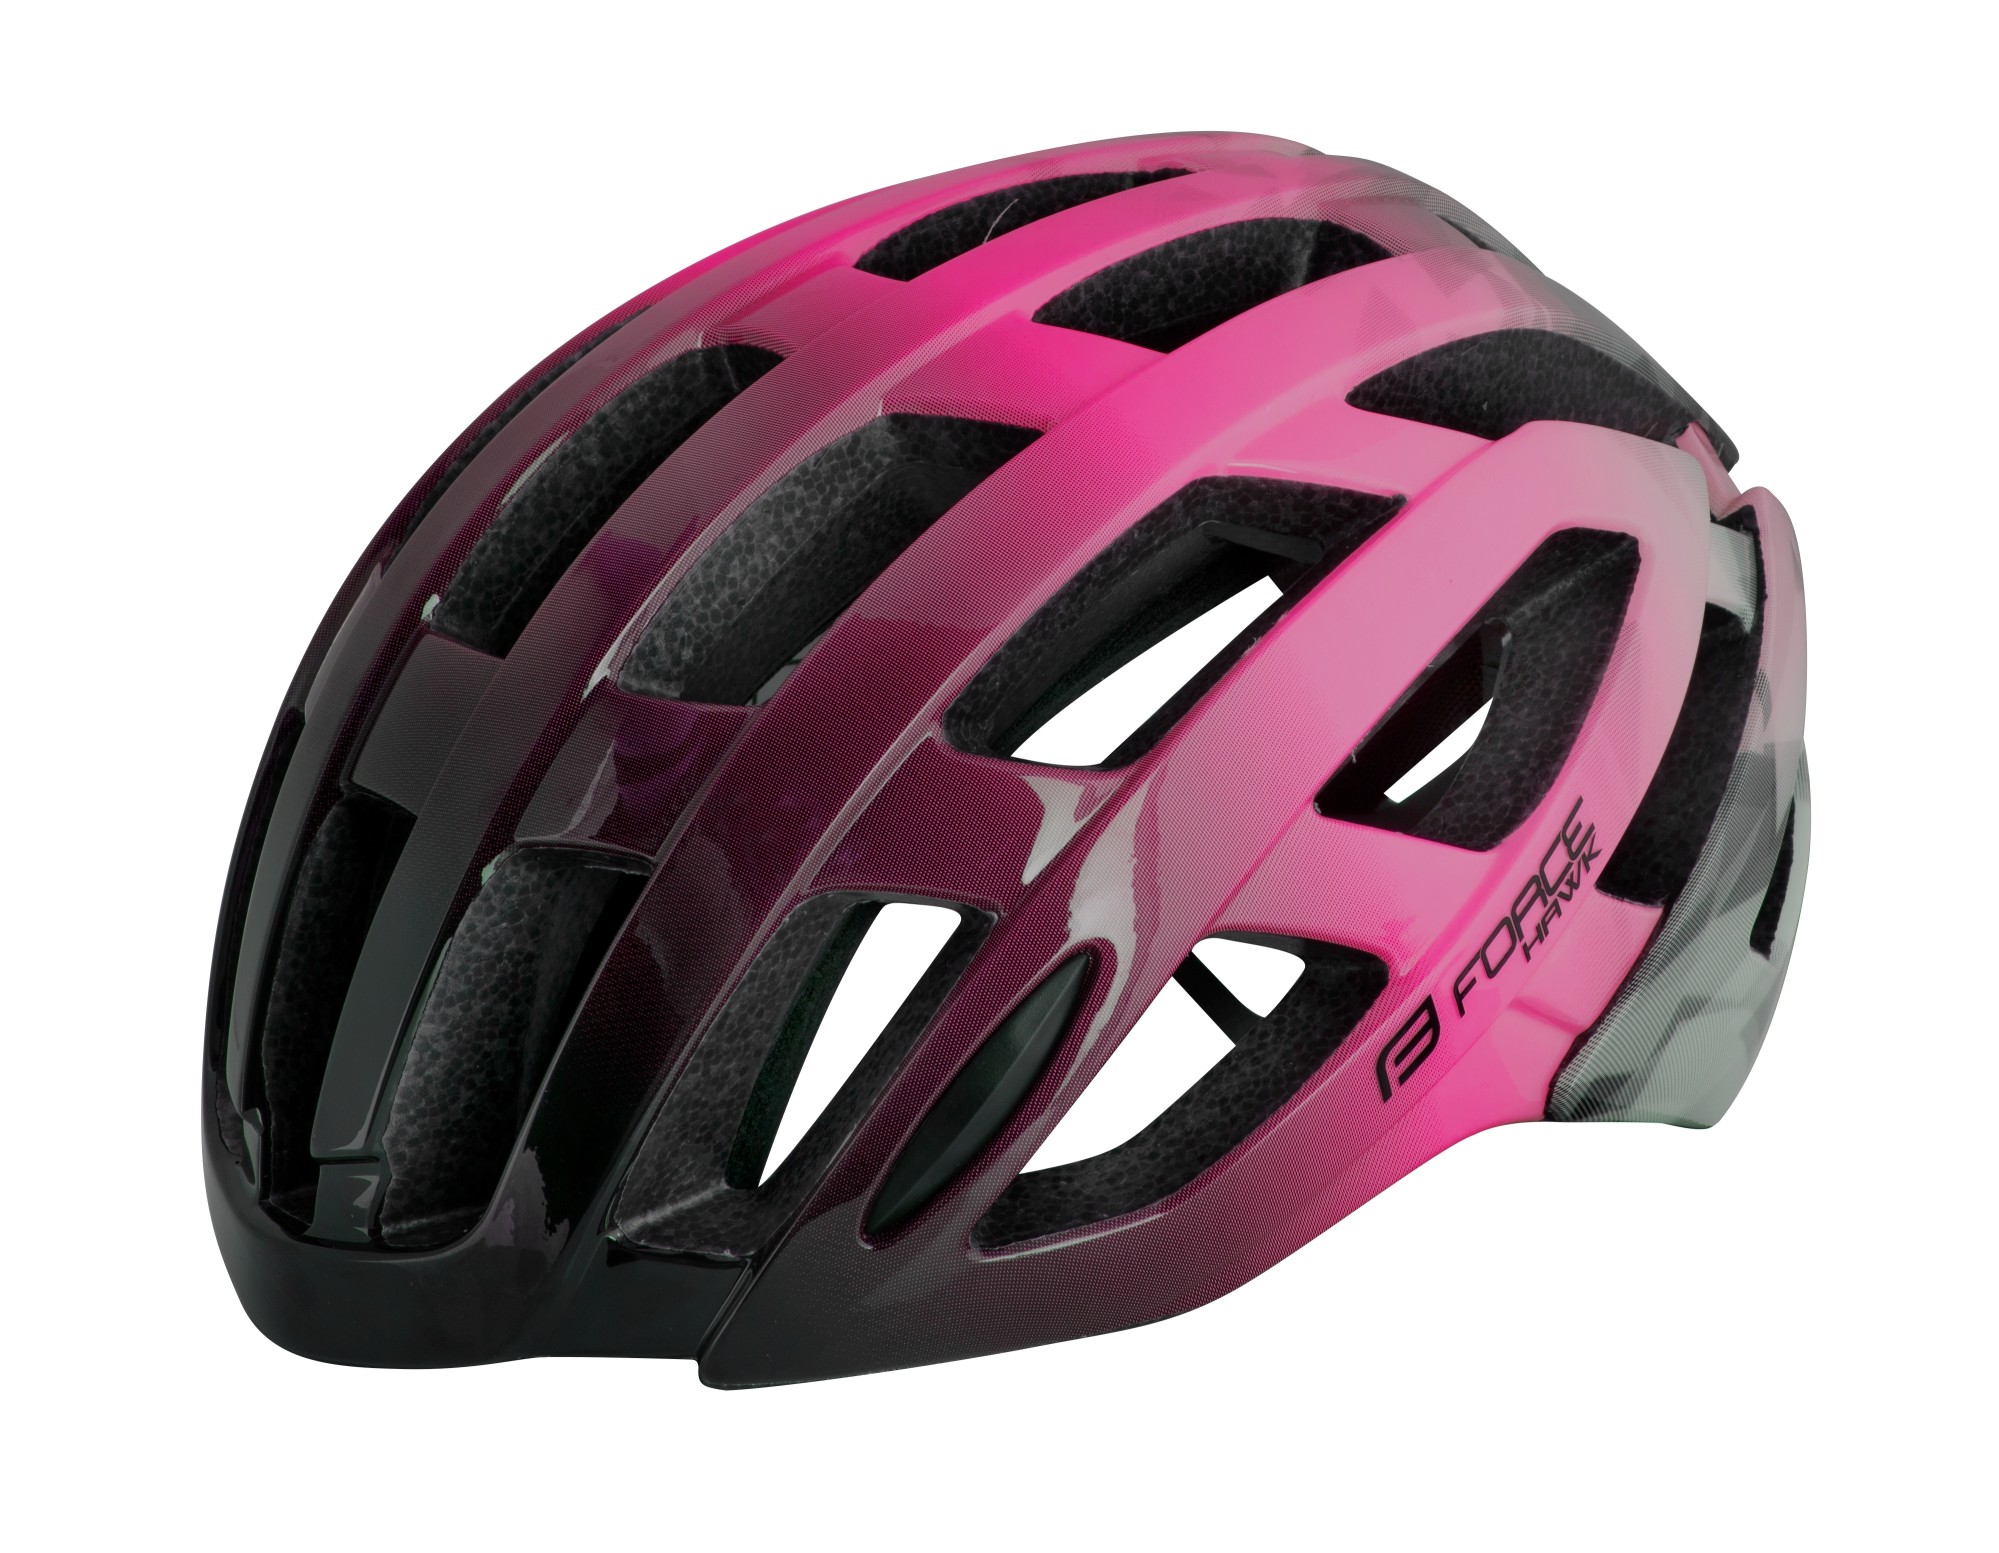 Force Hawk Bicycle Helmet Black/Pink